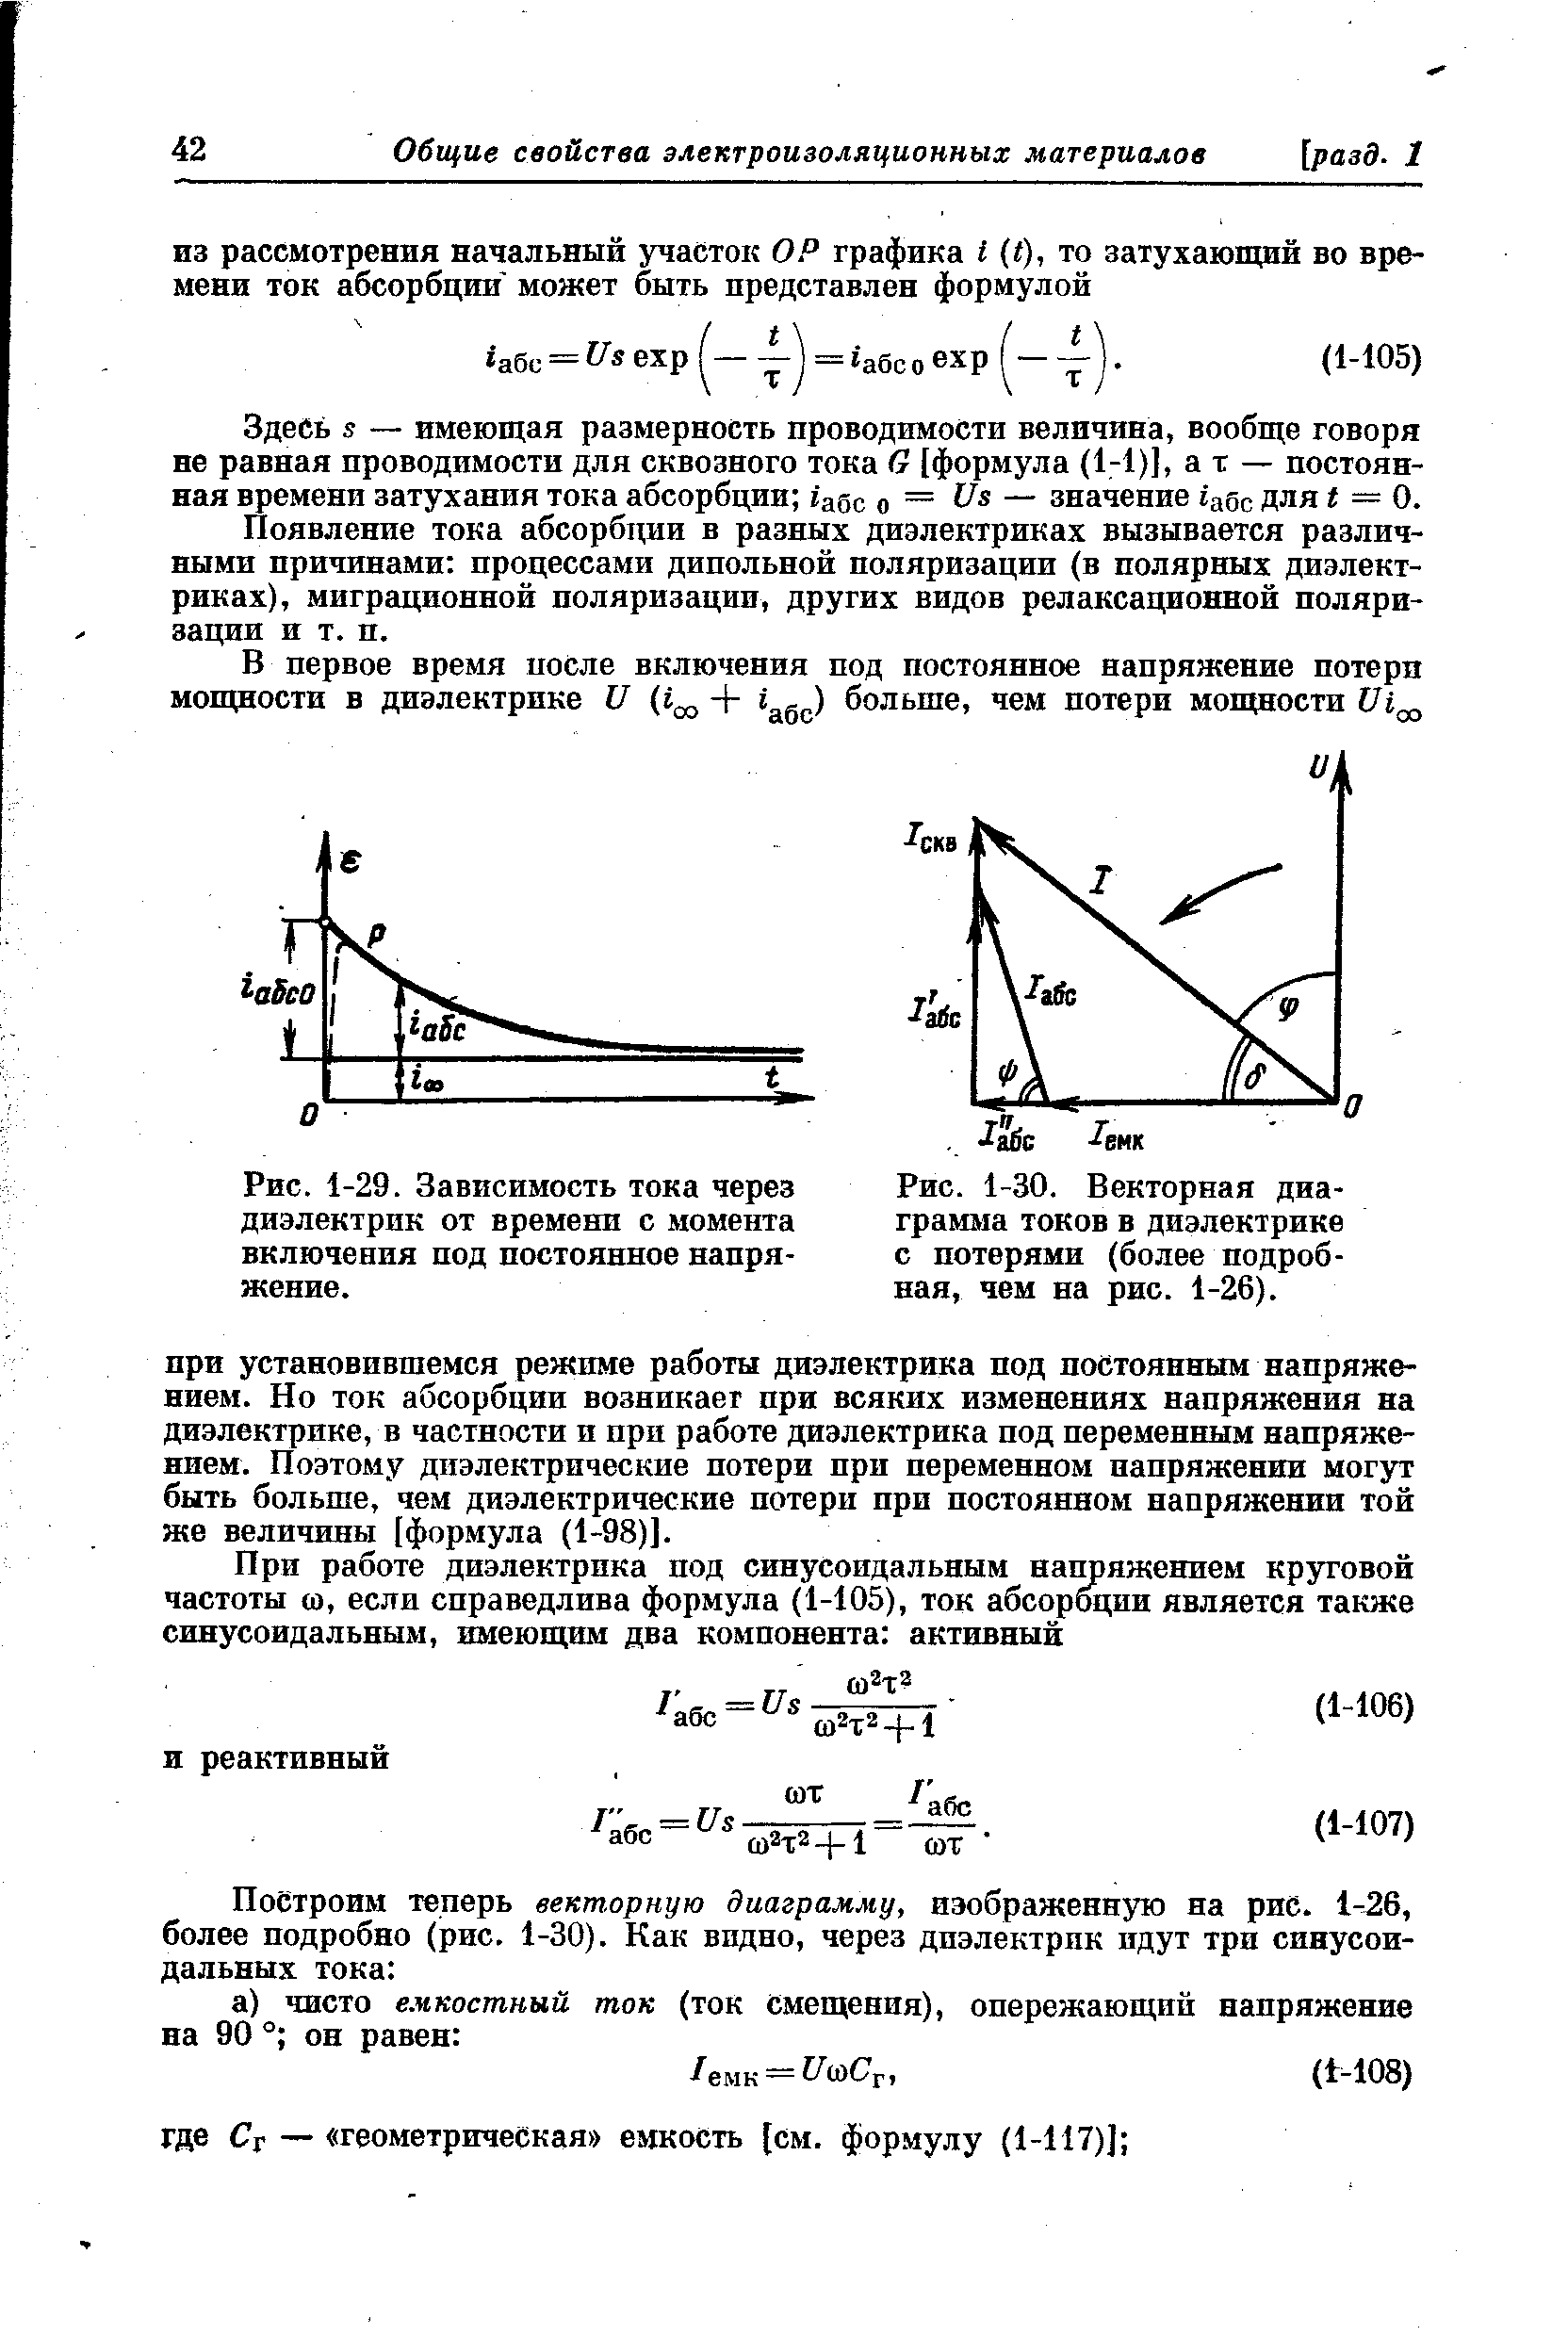 Рис. 1-30. <a href="/info/19381">Векторная диаграмма</a> токов в диэлектрике с потерями (более подробная, чем на рис. 1-26).
